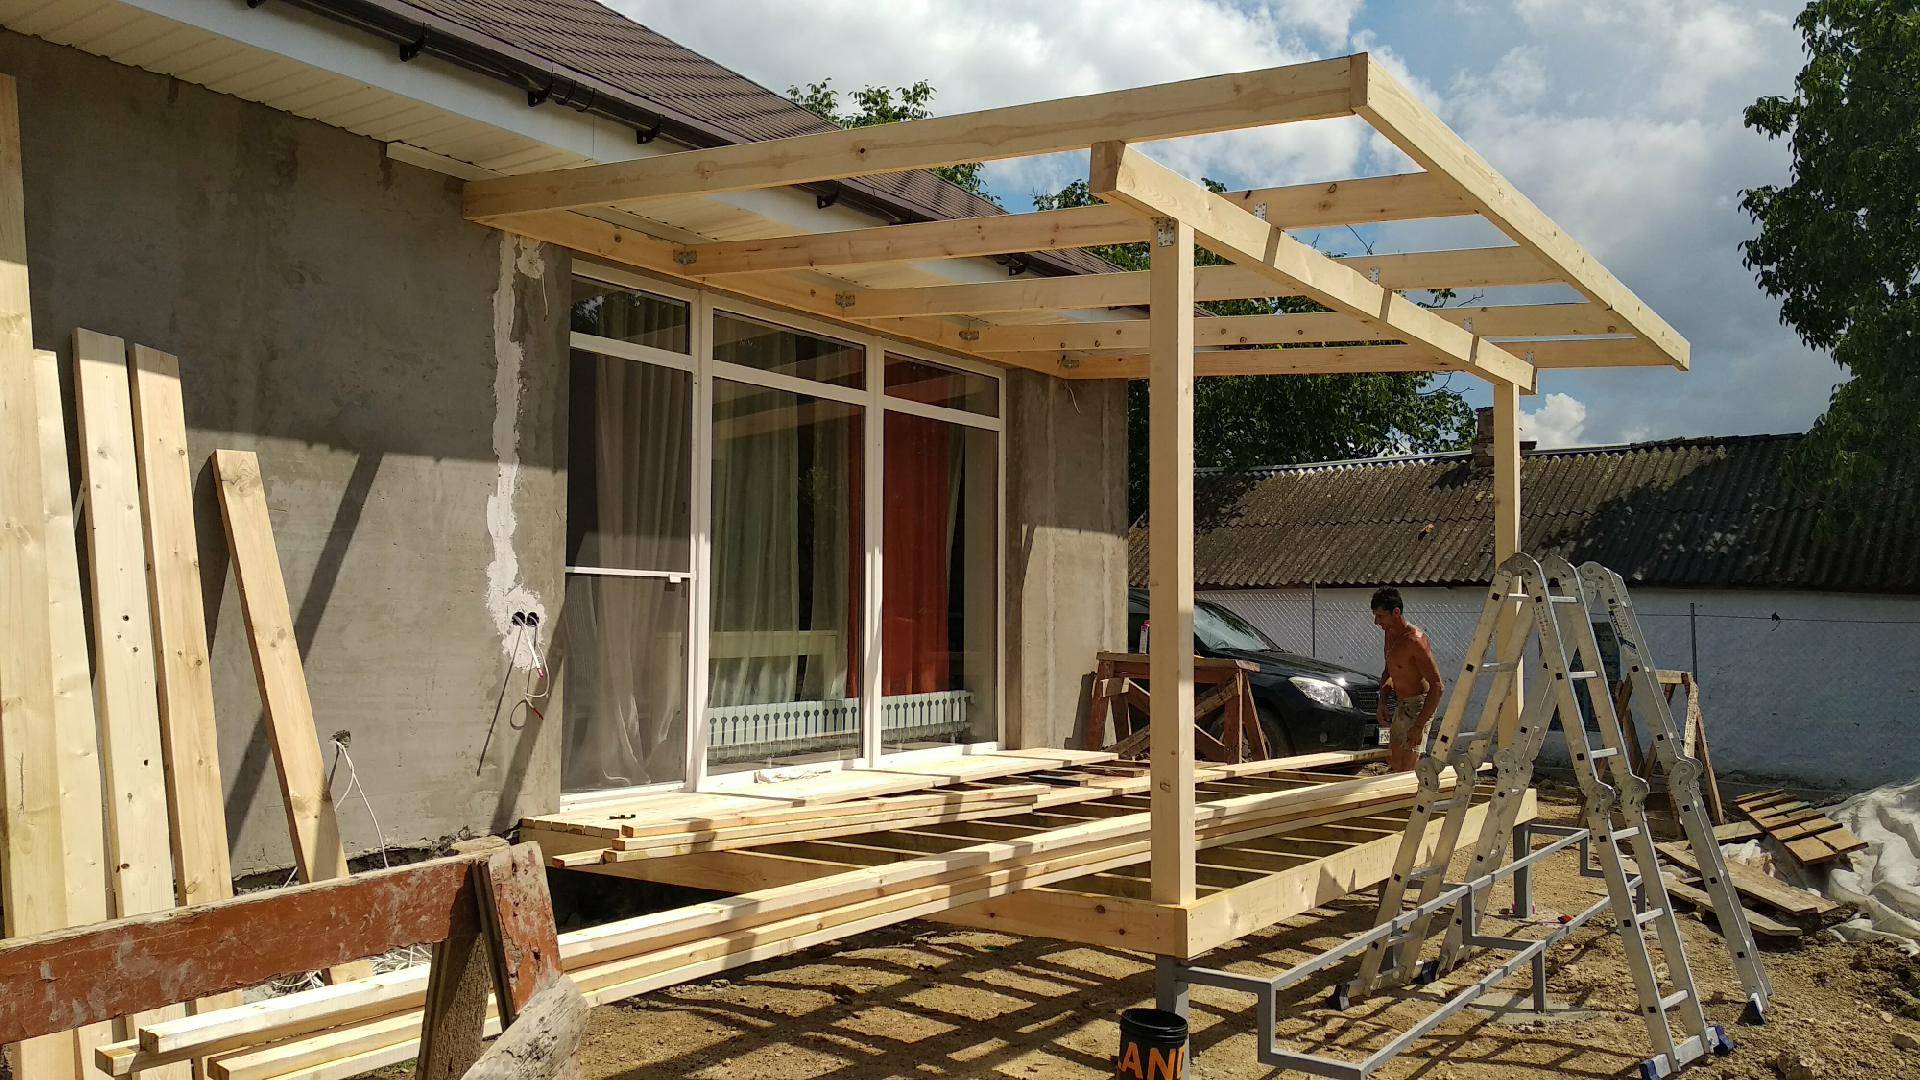 Веранда своими руками: как пристроить к дому быстро и дёшево, пошаговая инструкция строительства с фото, как построить на даче из дерева